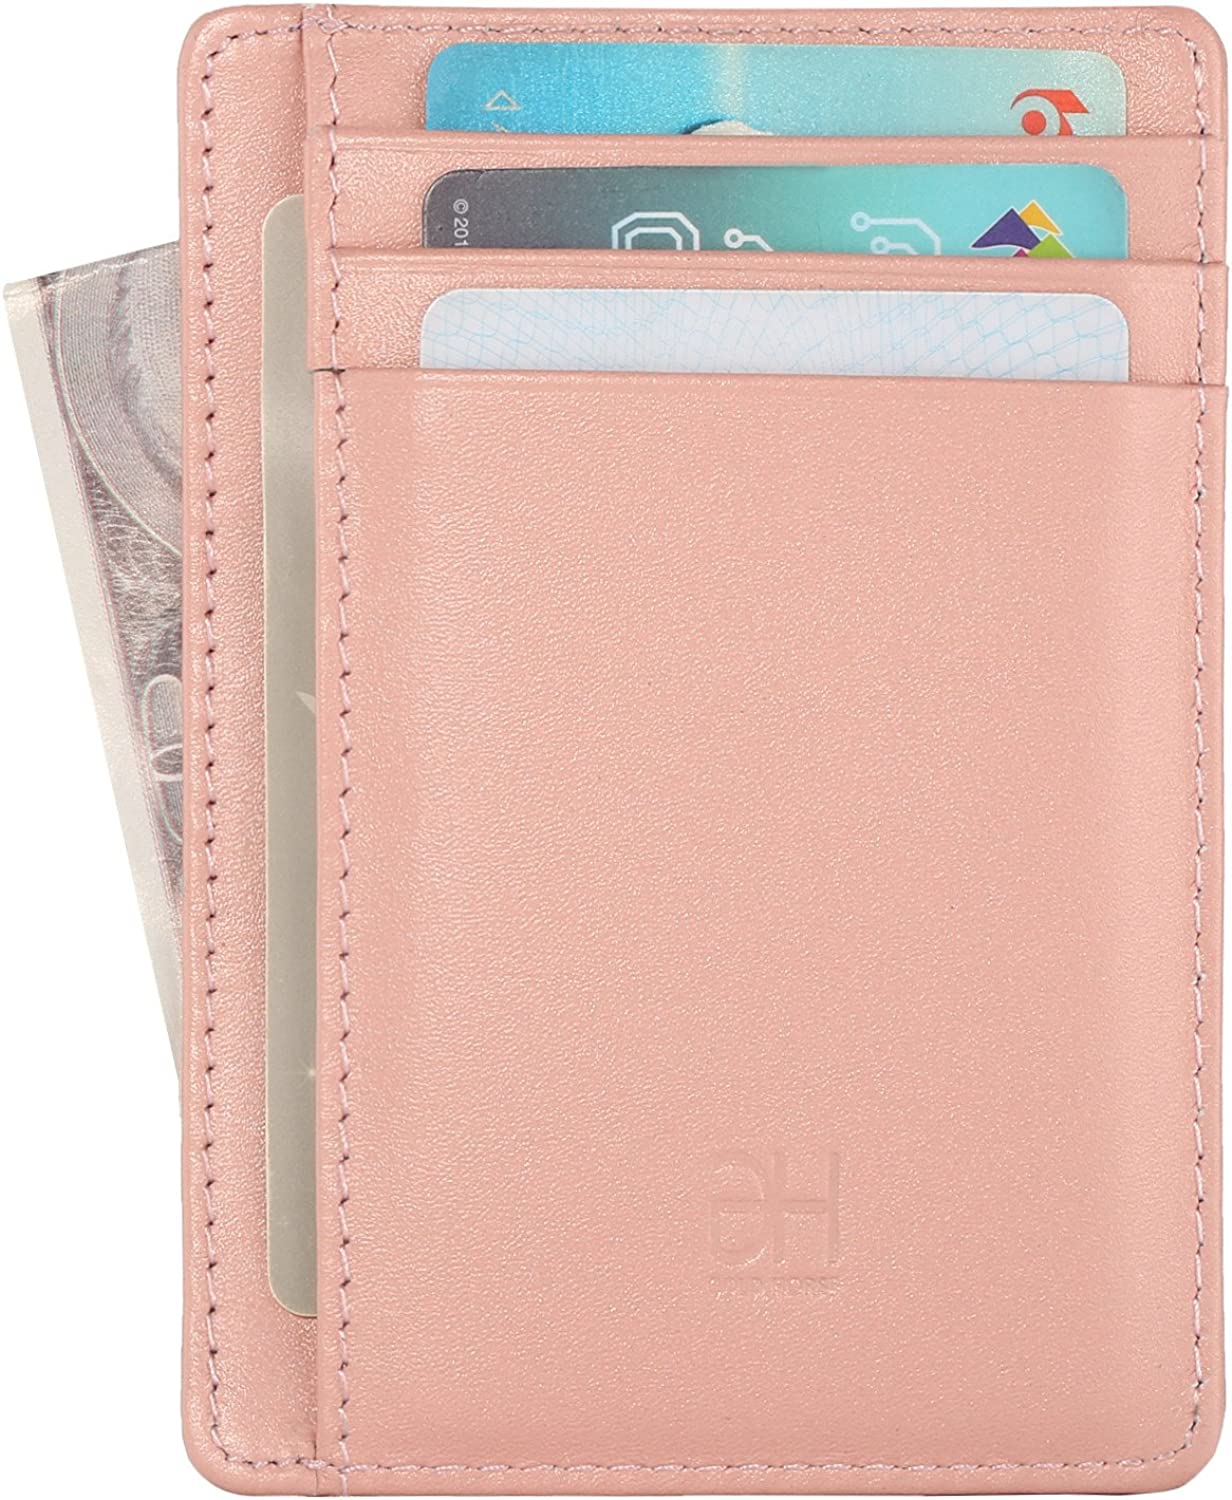 Slim Card Holder Minimalist Leather Front Pocket Wallet for Women